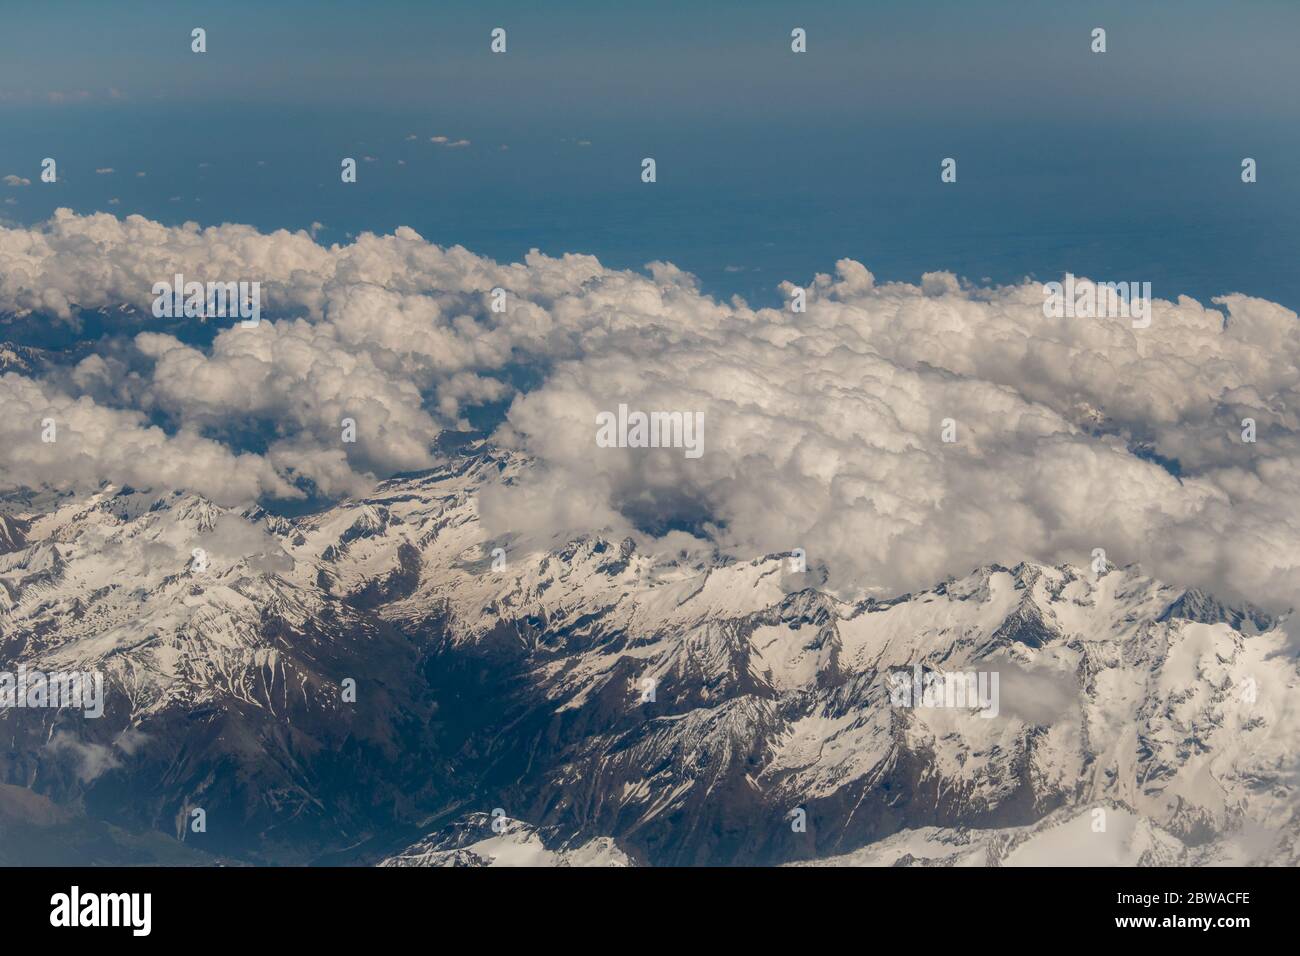 imagen aérea sobre las nubes de montañas con picos nevados Foto de stock